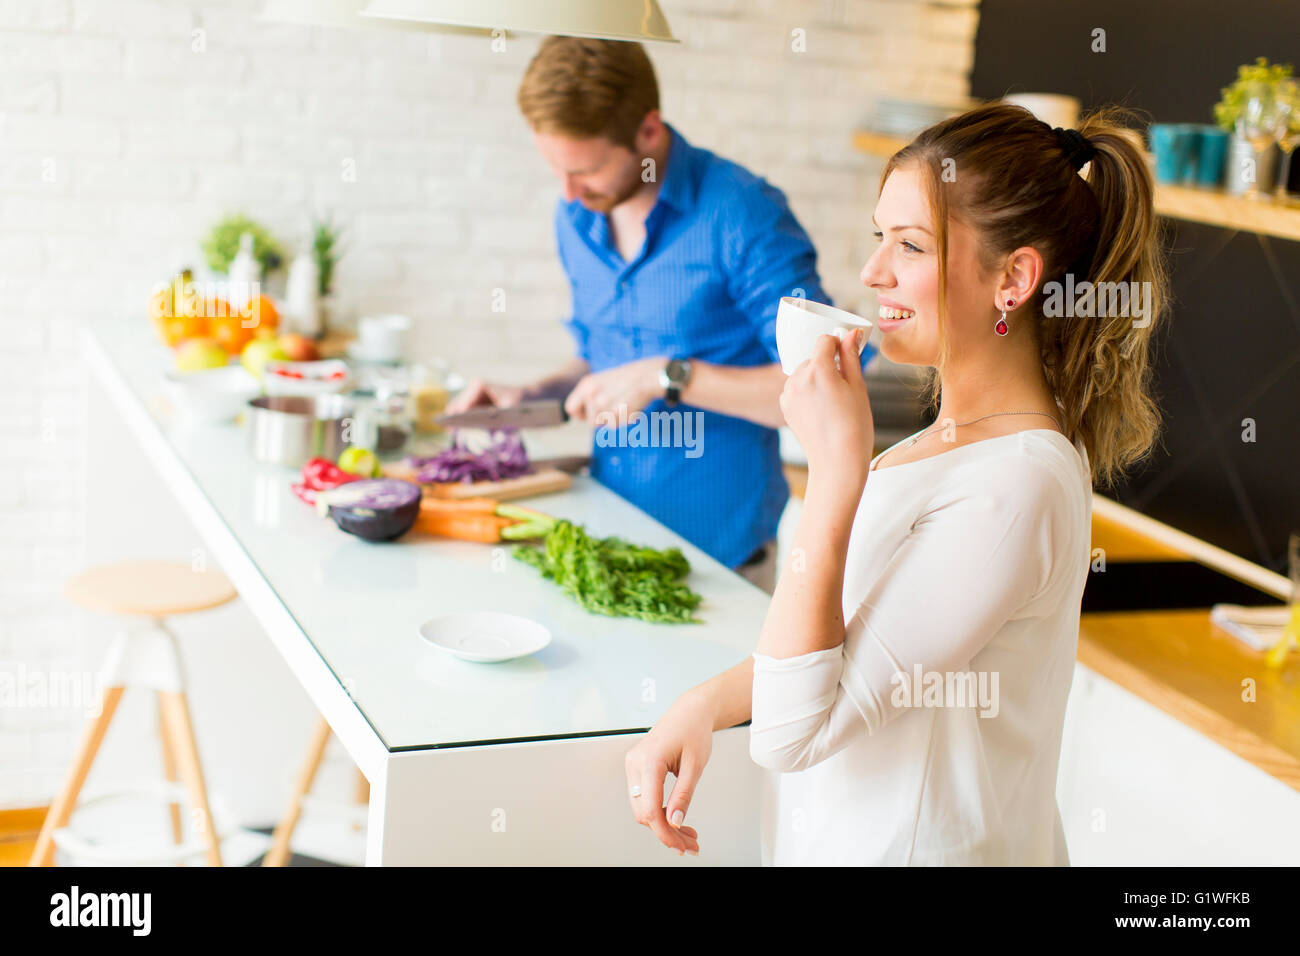 La donna beve caffè mentre un uomo si prepara un pasto Foto Stock